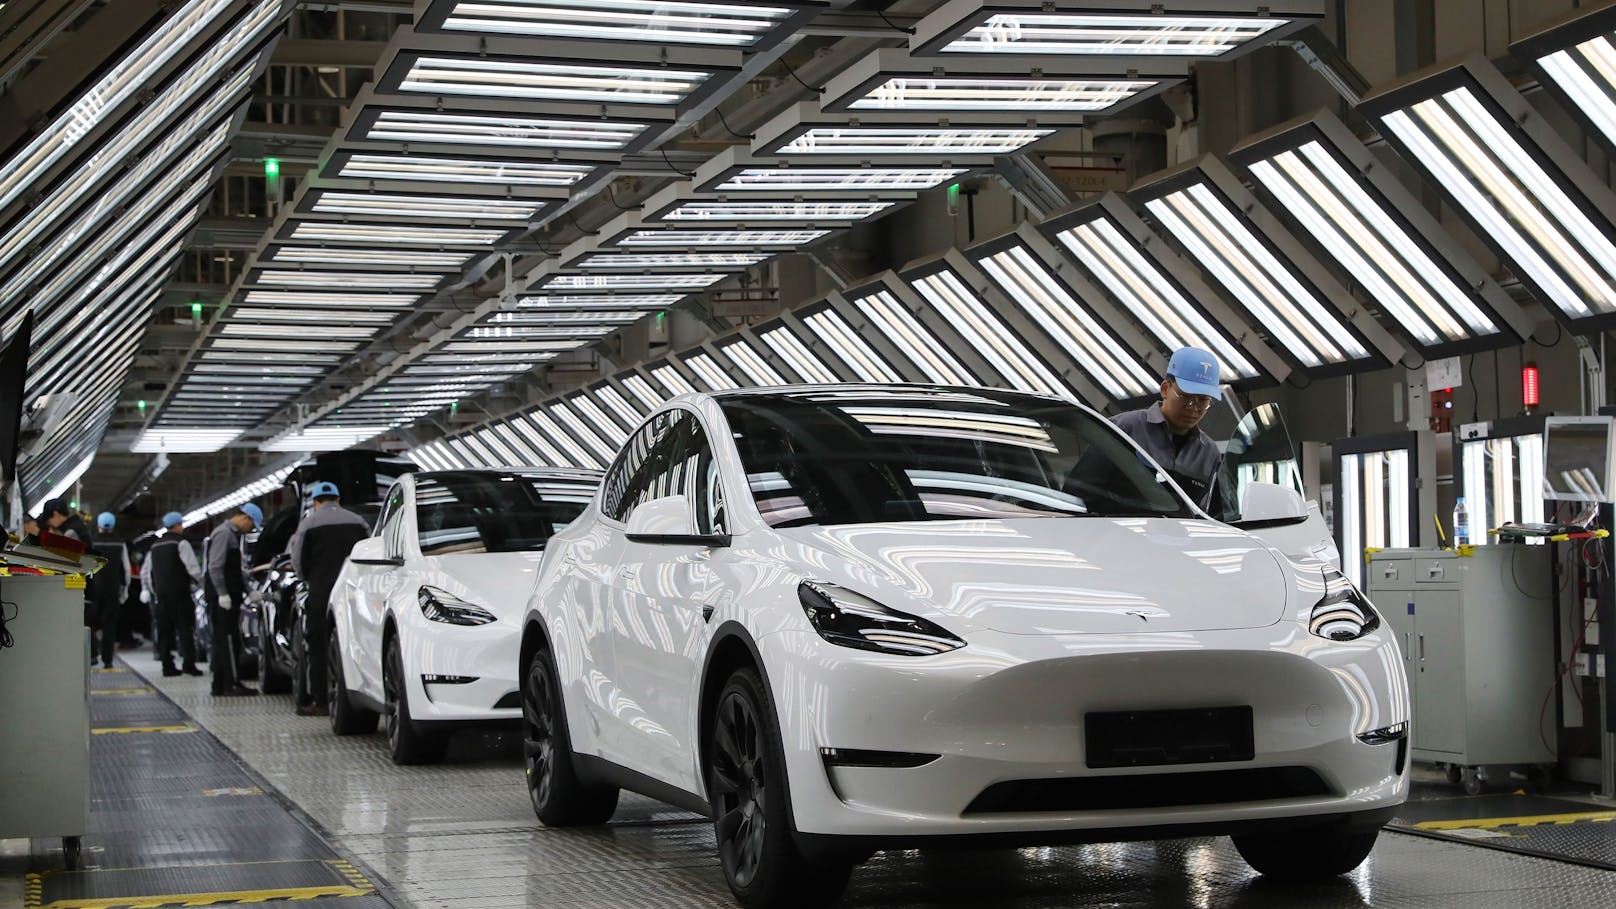 Probleme bei Lenkung: Tesla ruft Millionen Autos zurück